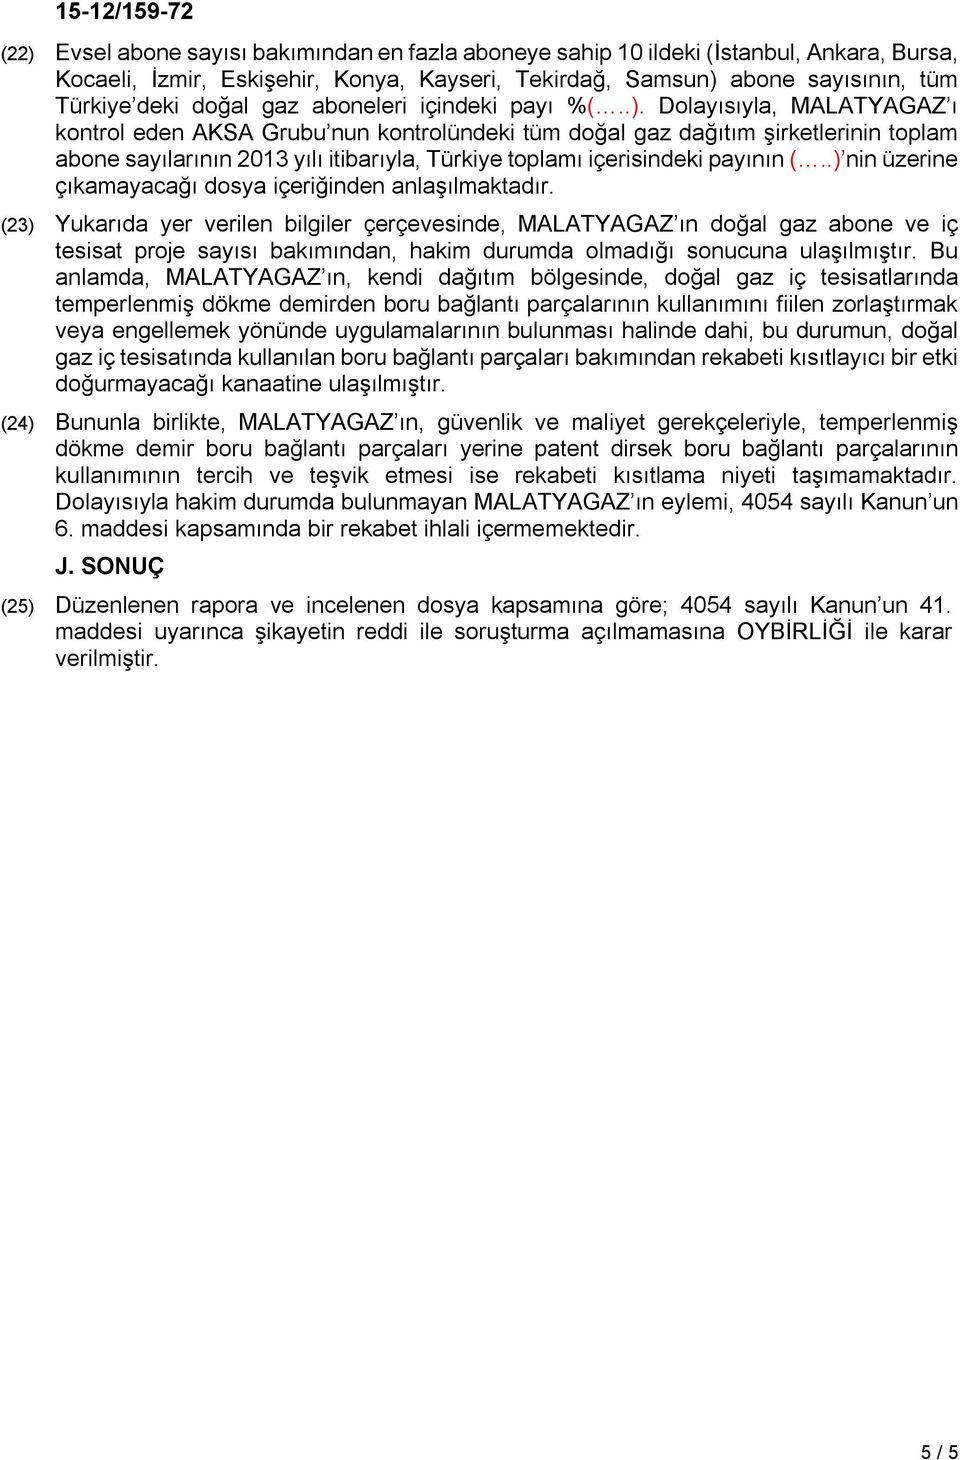 Dolayısıyla, MALATYAGAZ ı kontrol eden AKSA Grubu nun kontrolündeki tüm doğal gaz dağıtım şirketlerinin toplam abone sayılarının 2013 yılı itibarıyla, Türkiye toplamı içerisindeki payının (.